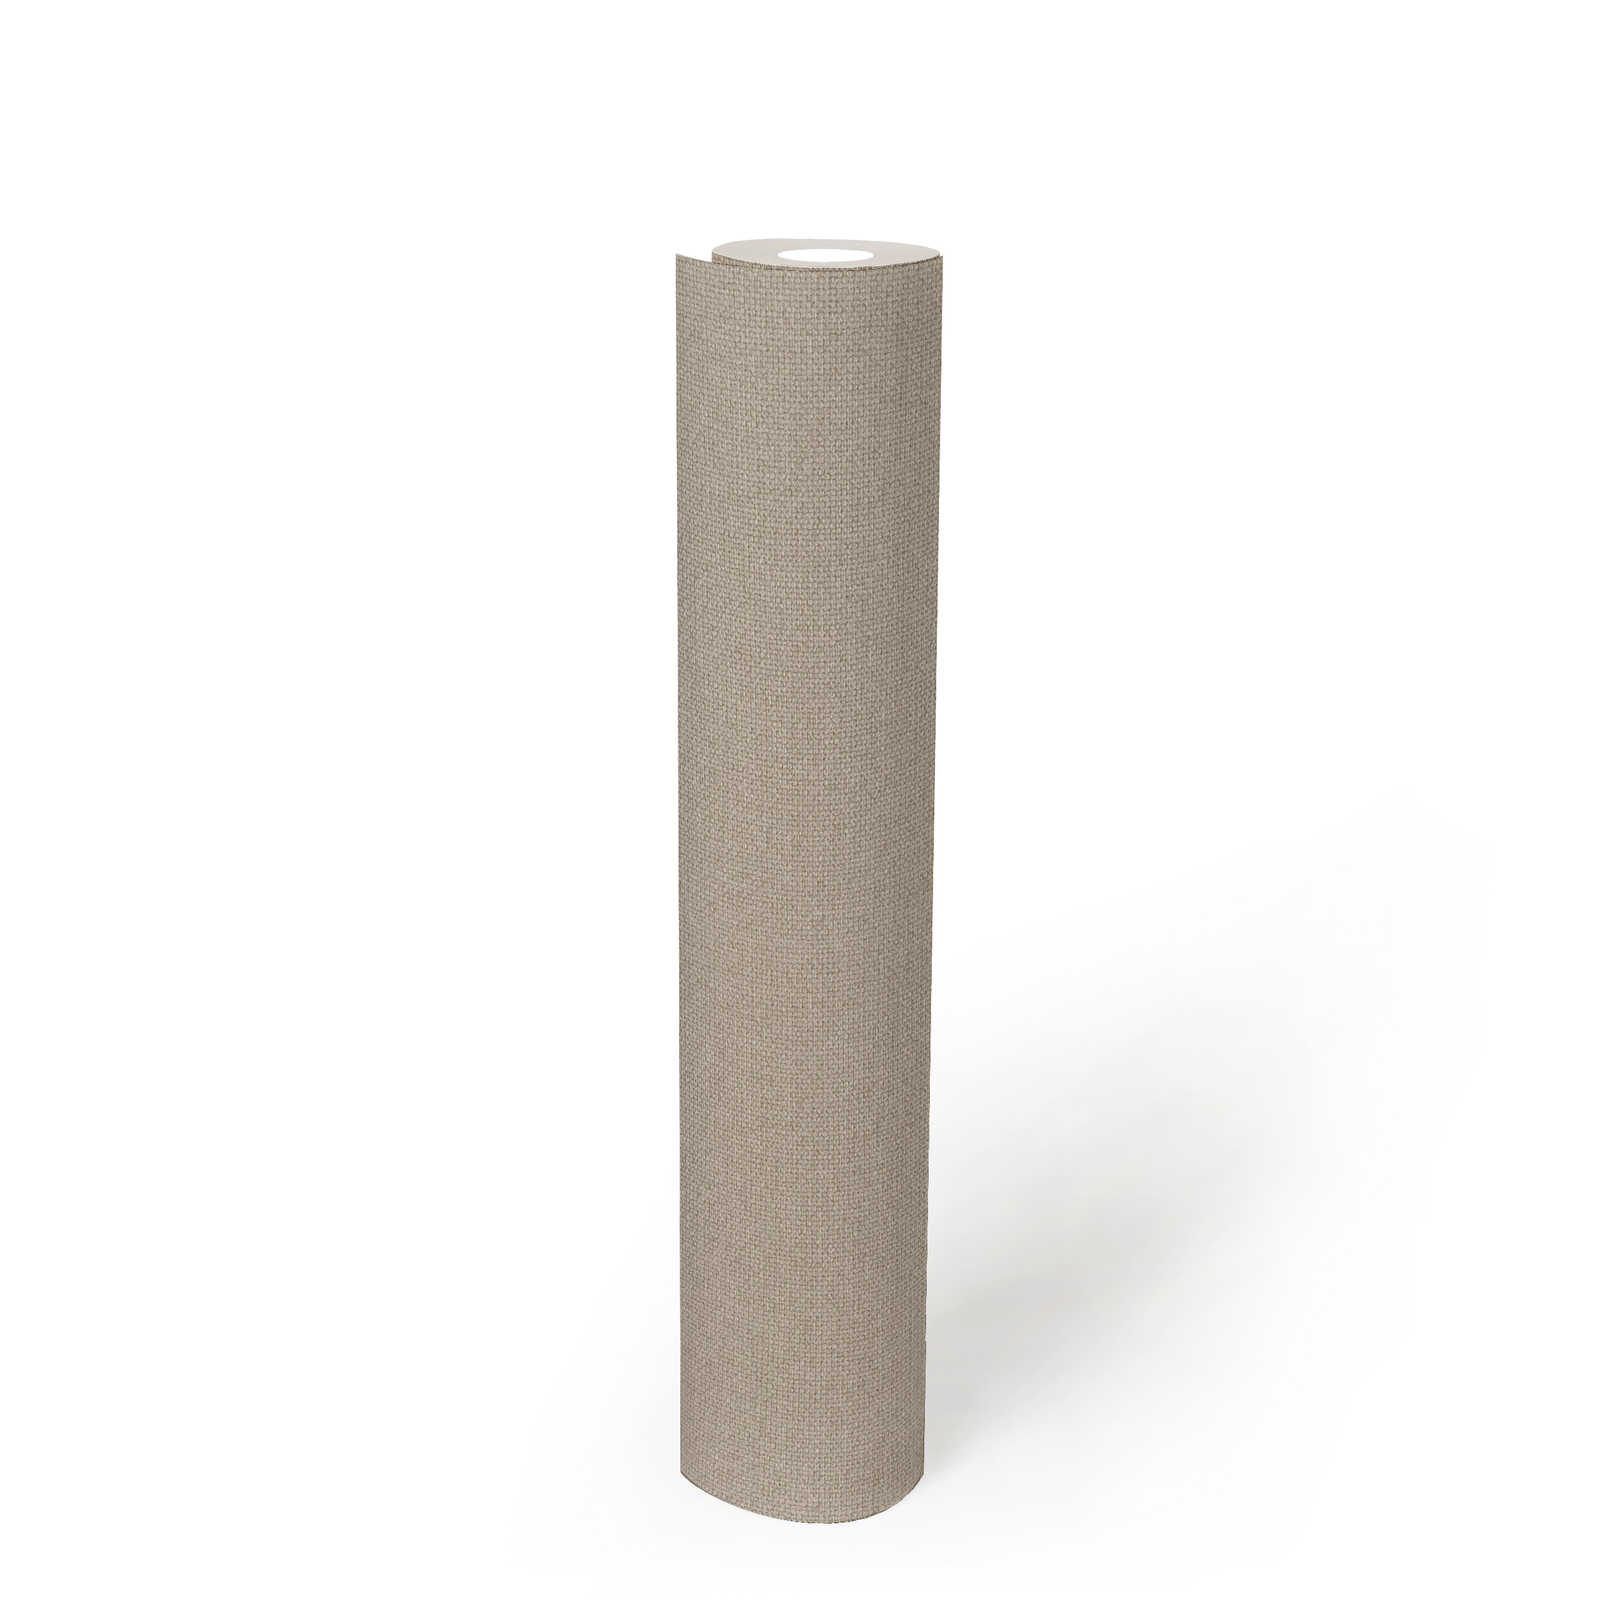             Leinenoptik Tapete mit Strukturoberfläche, einfarbig – Beige, Grau
        